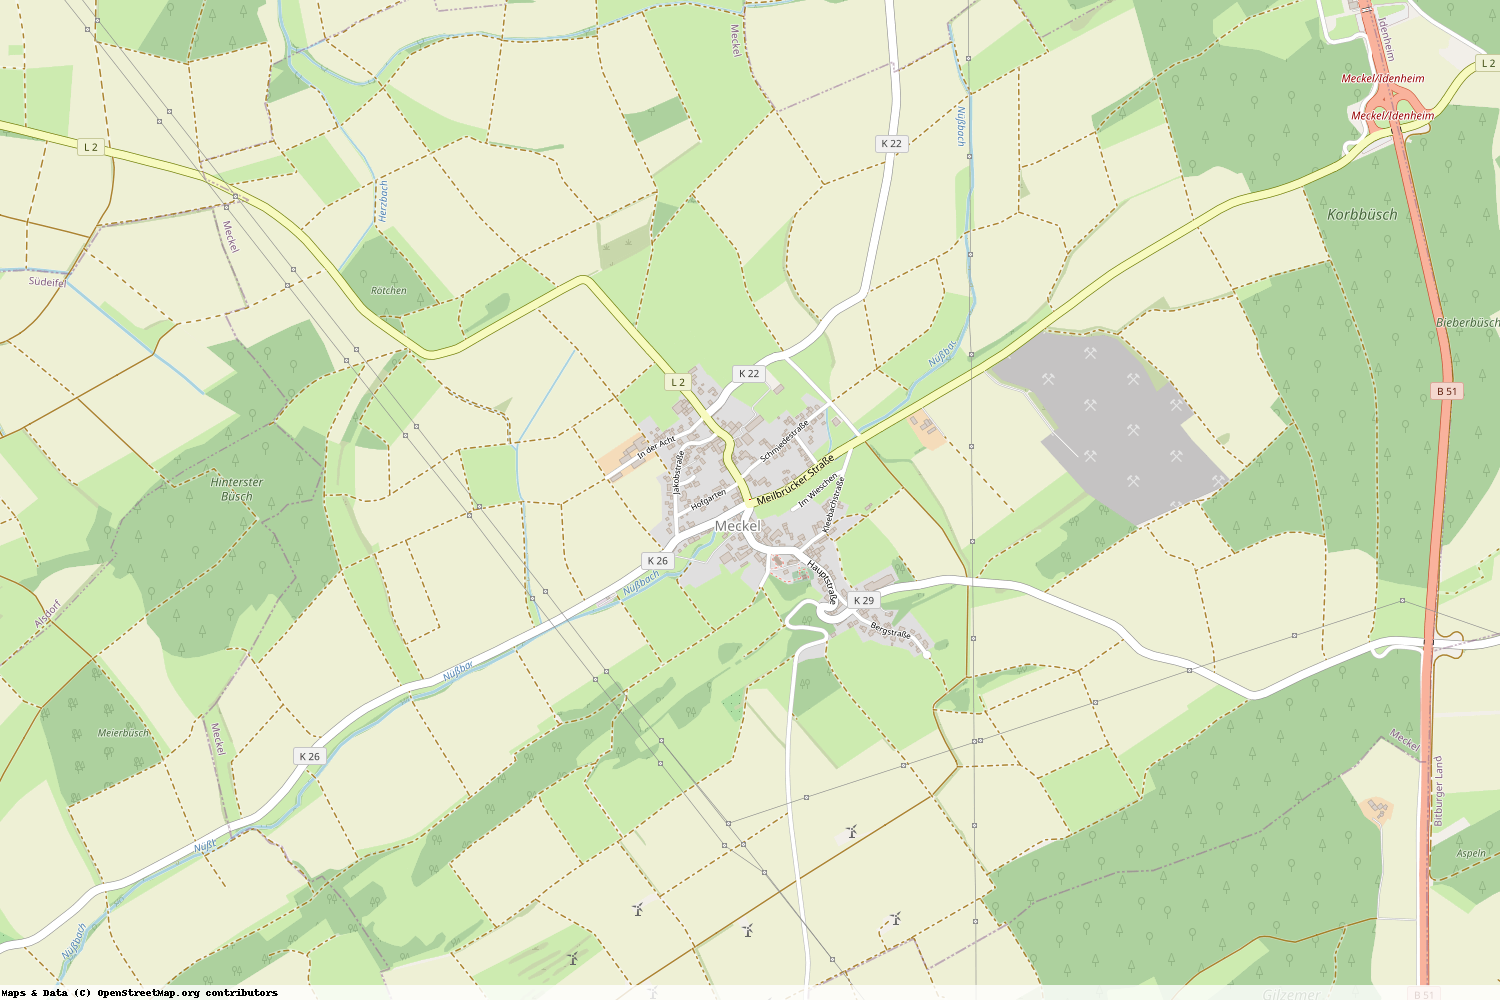 Ist gerade Stromausfall in Rheinland-Pfalz - Eifelkreis Bitburg-Prüm - Meckel?